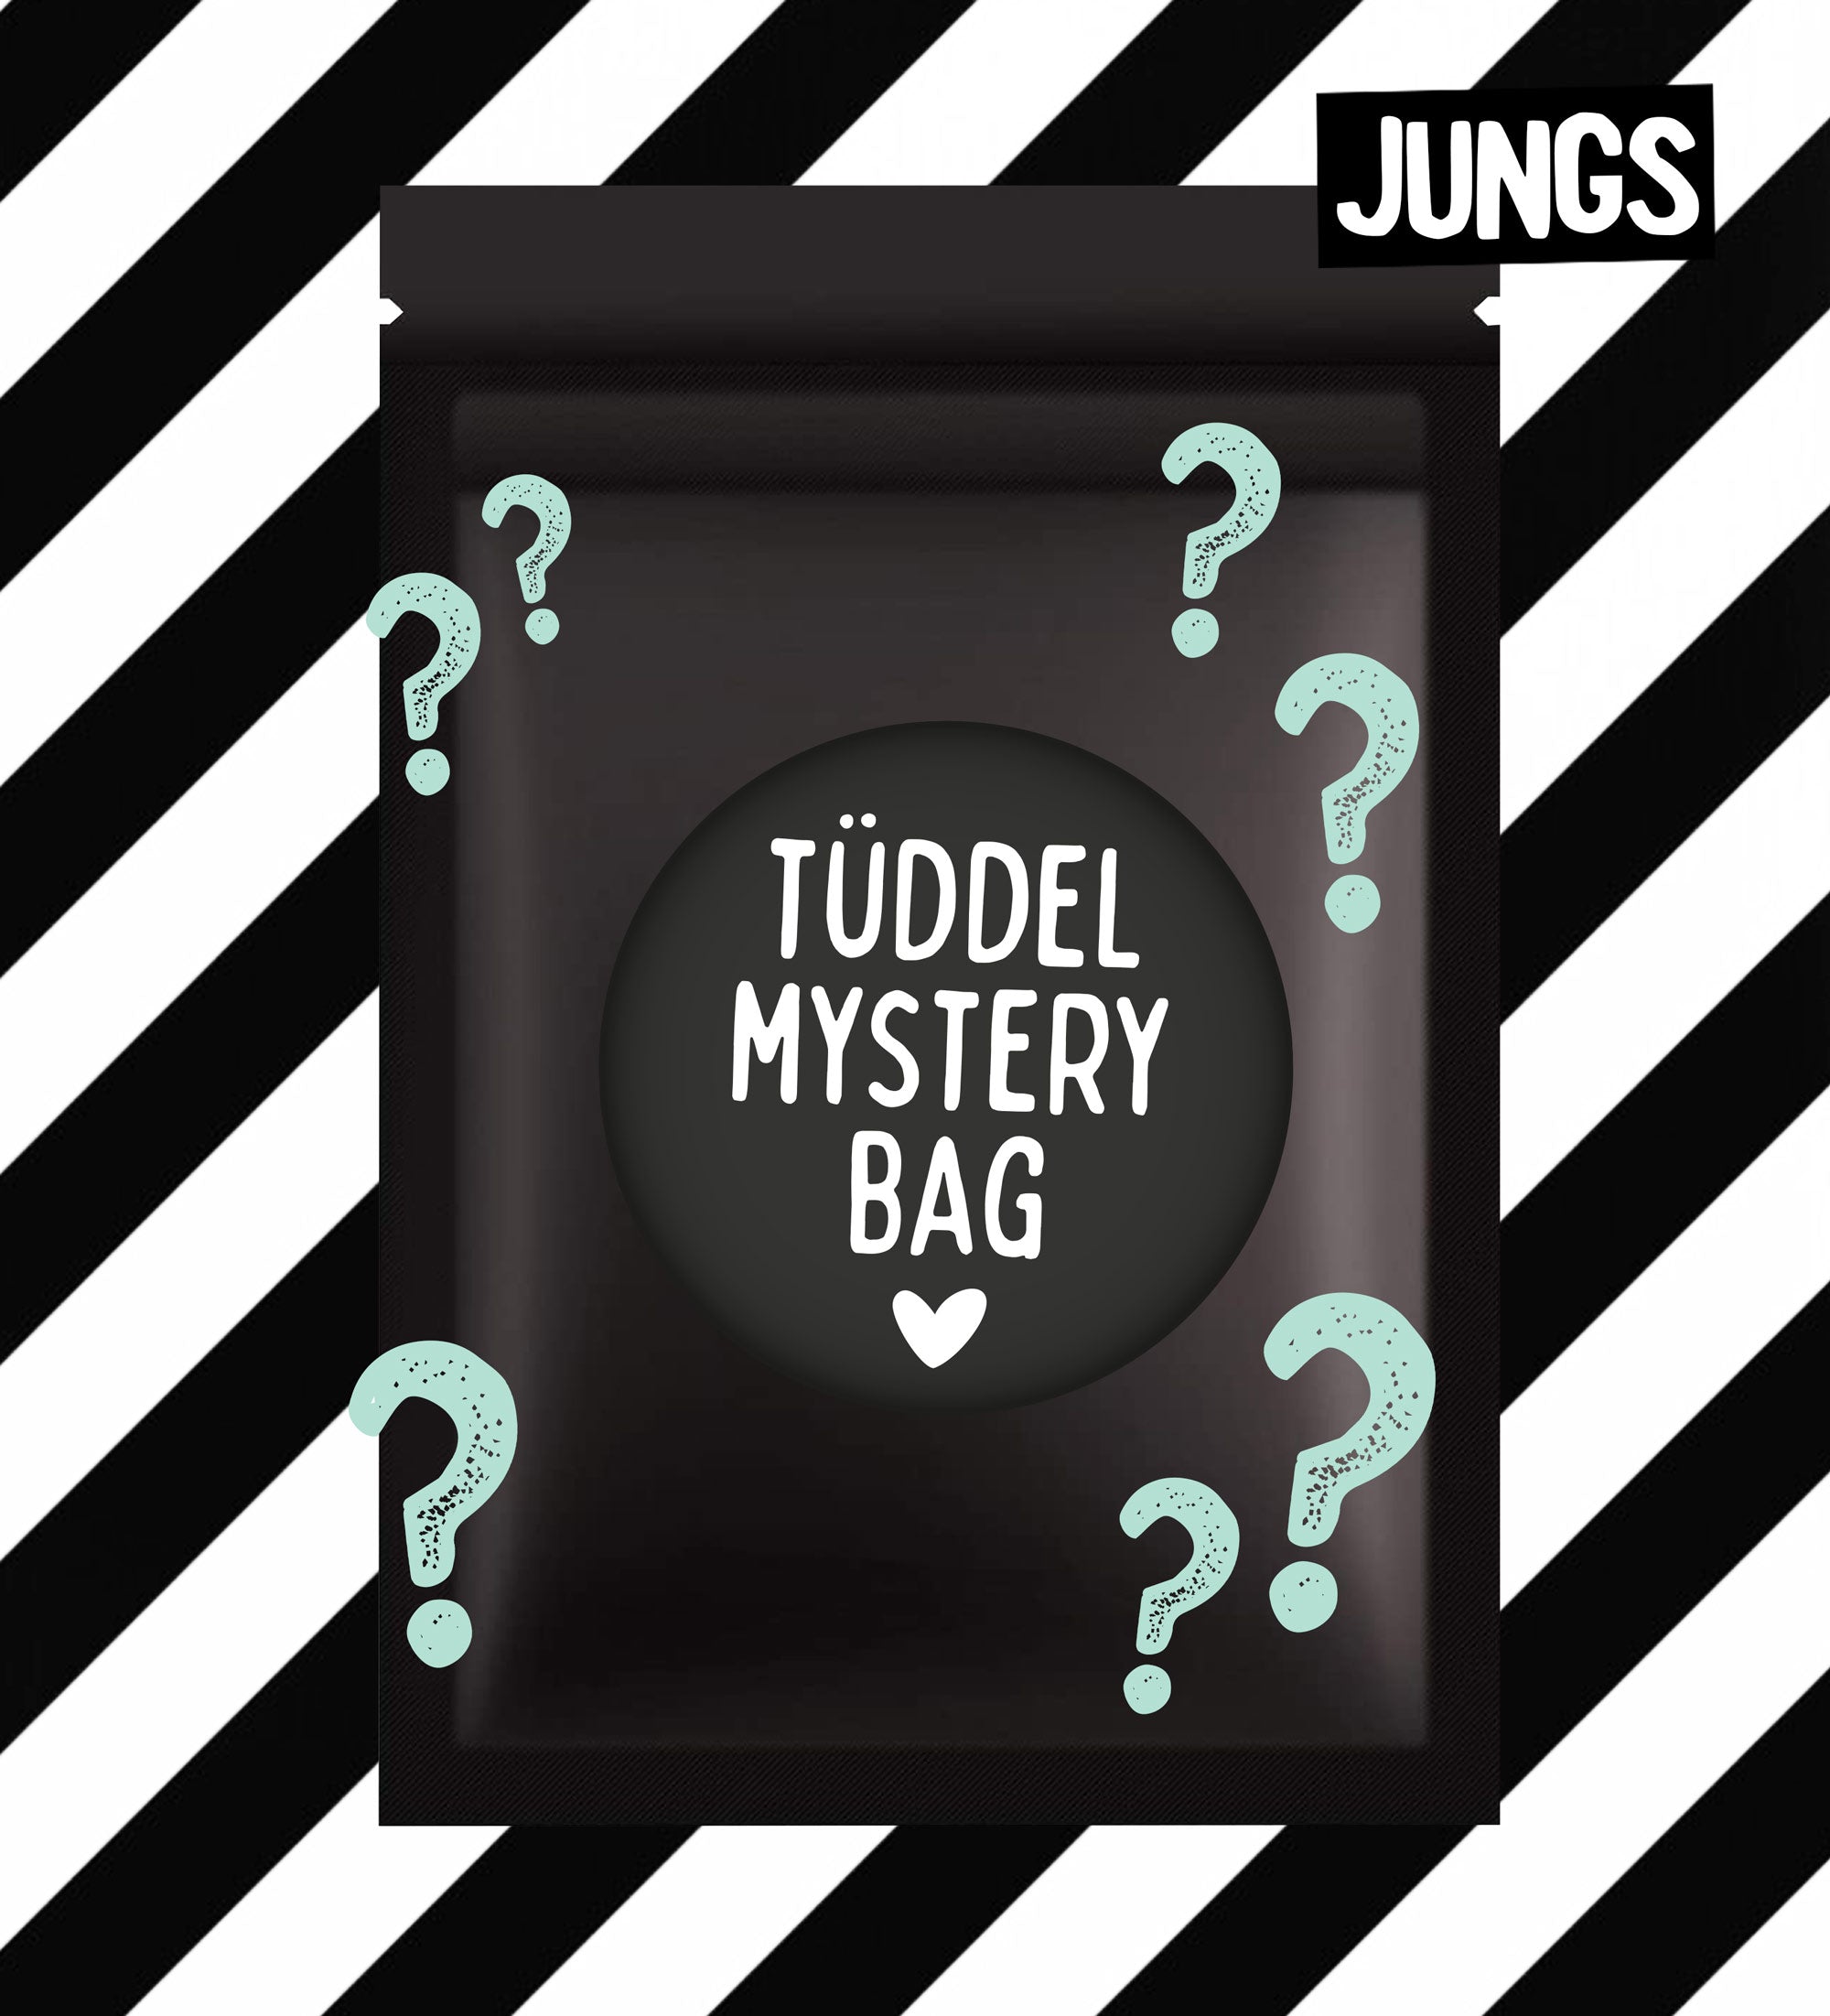 Tüddel Mystery Bag - Jungs *SEPTEMBER*